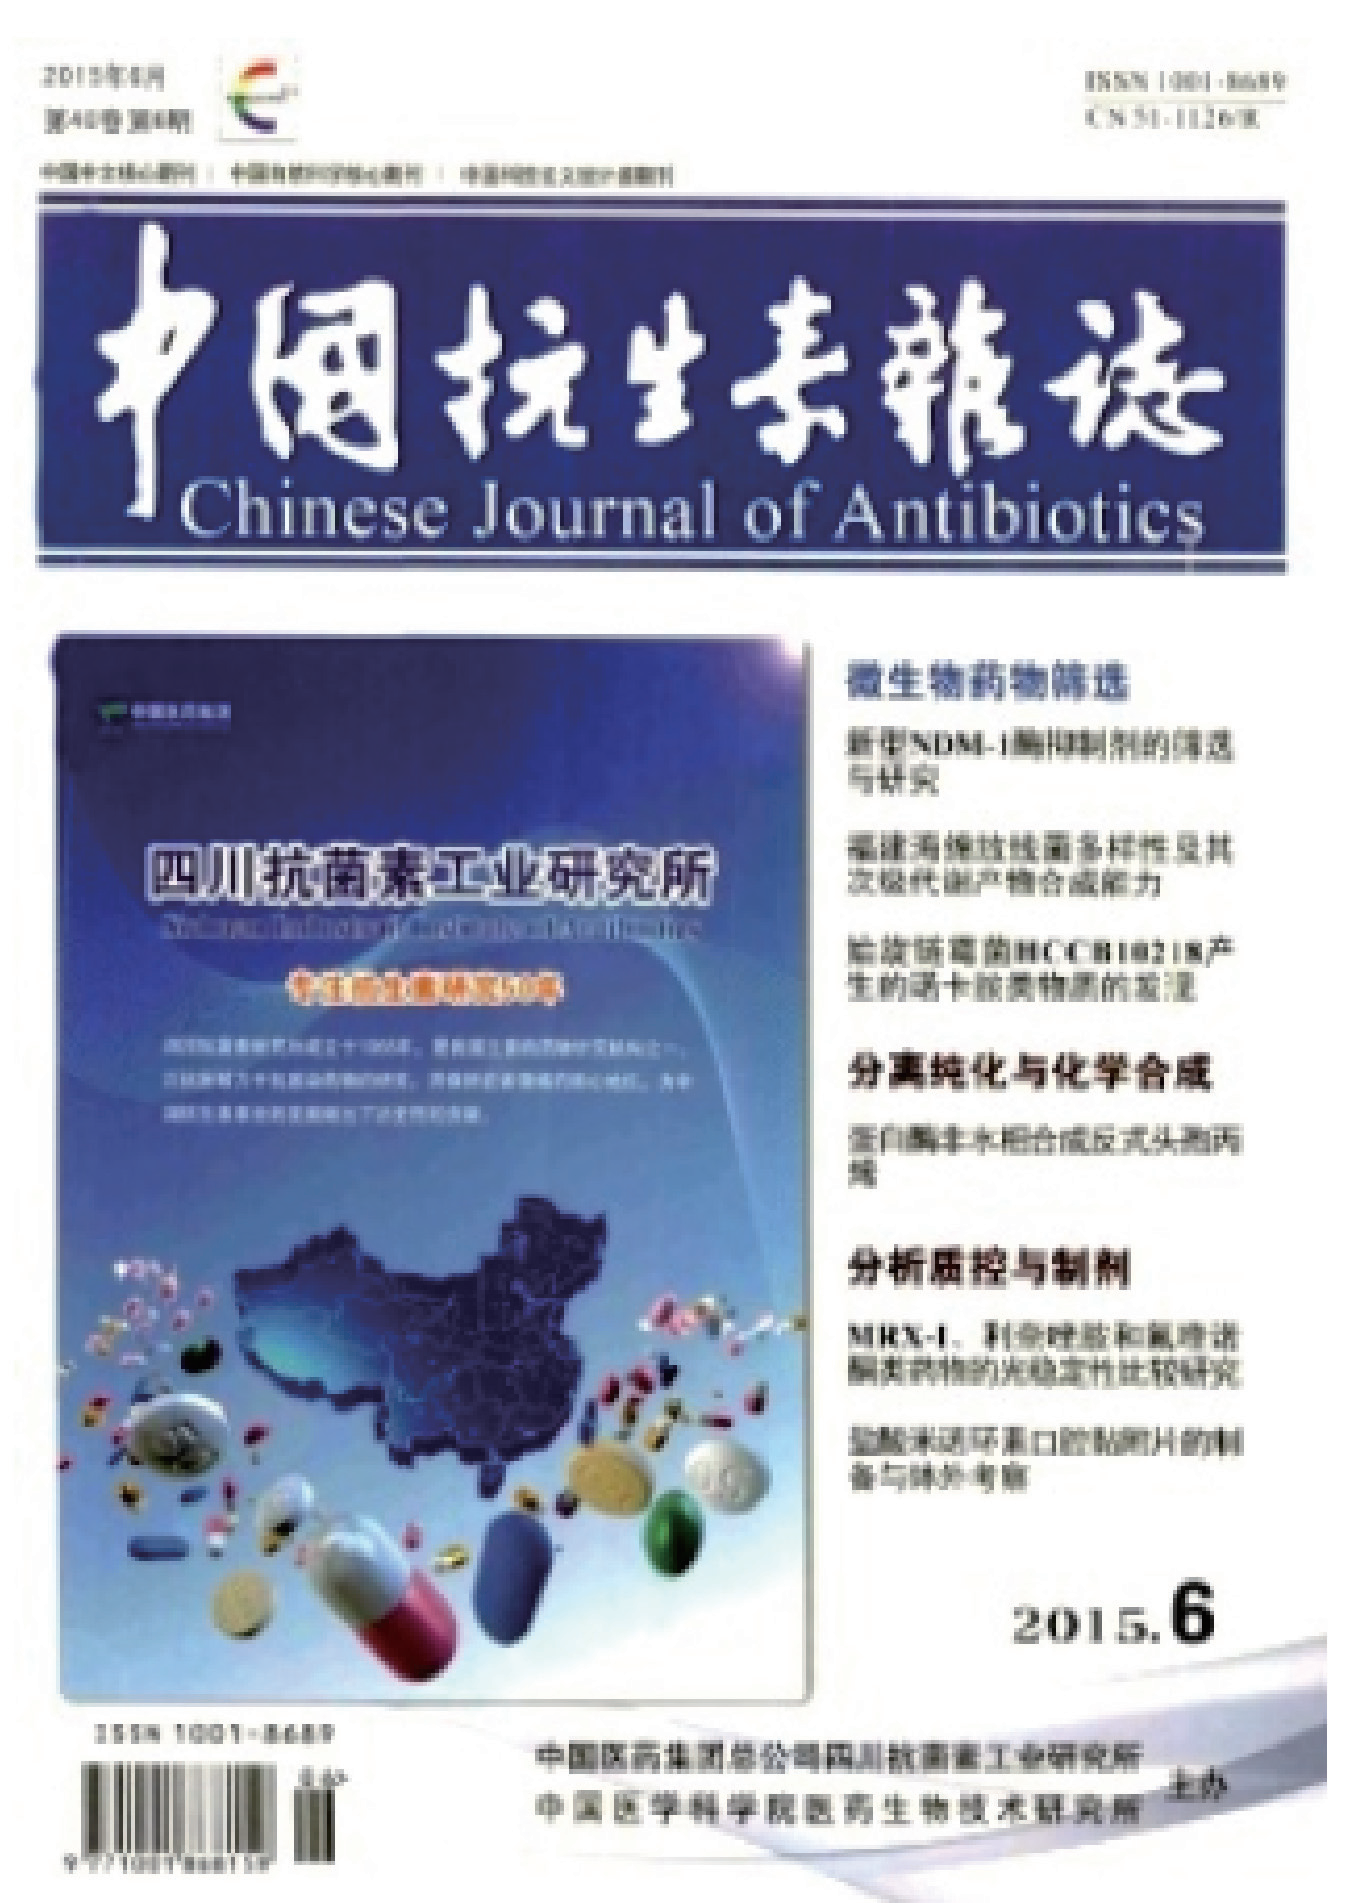 中国抗生素杂志.PNG